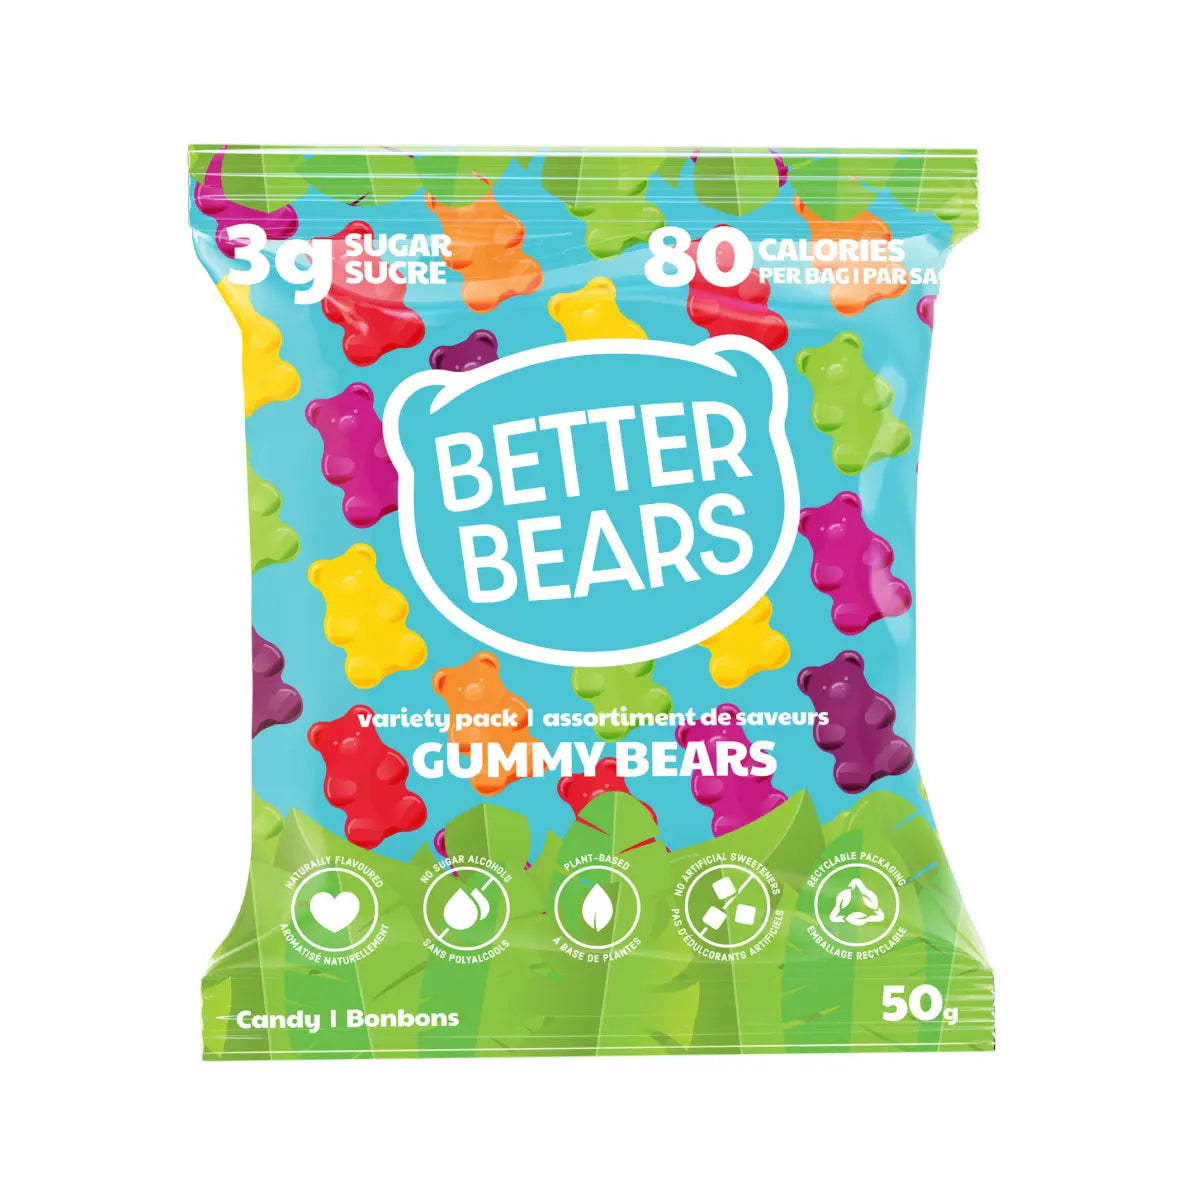 Better Bears Gummy Bears Variety Pack 50g